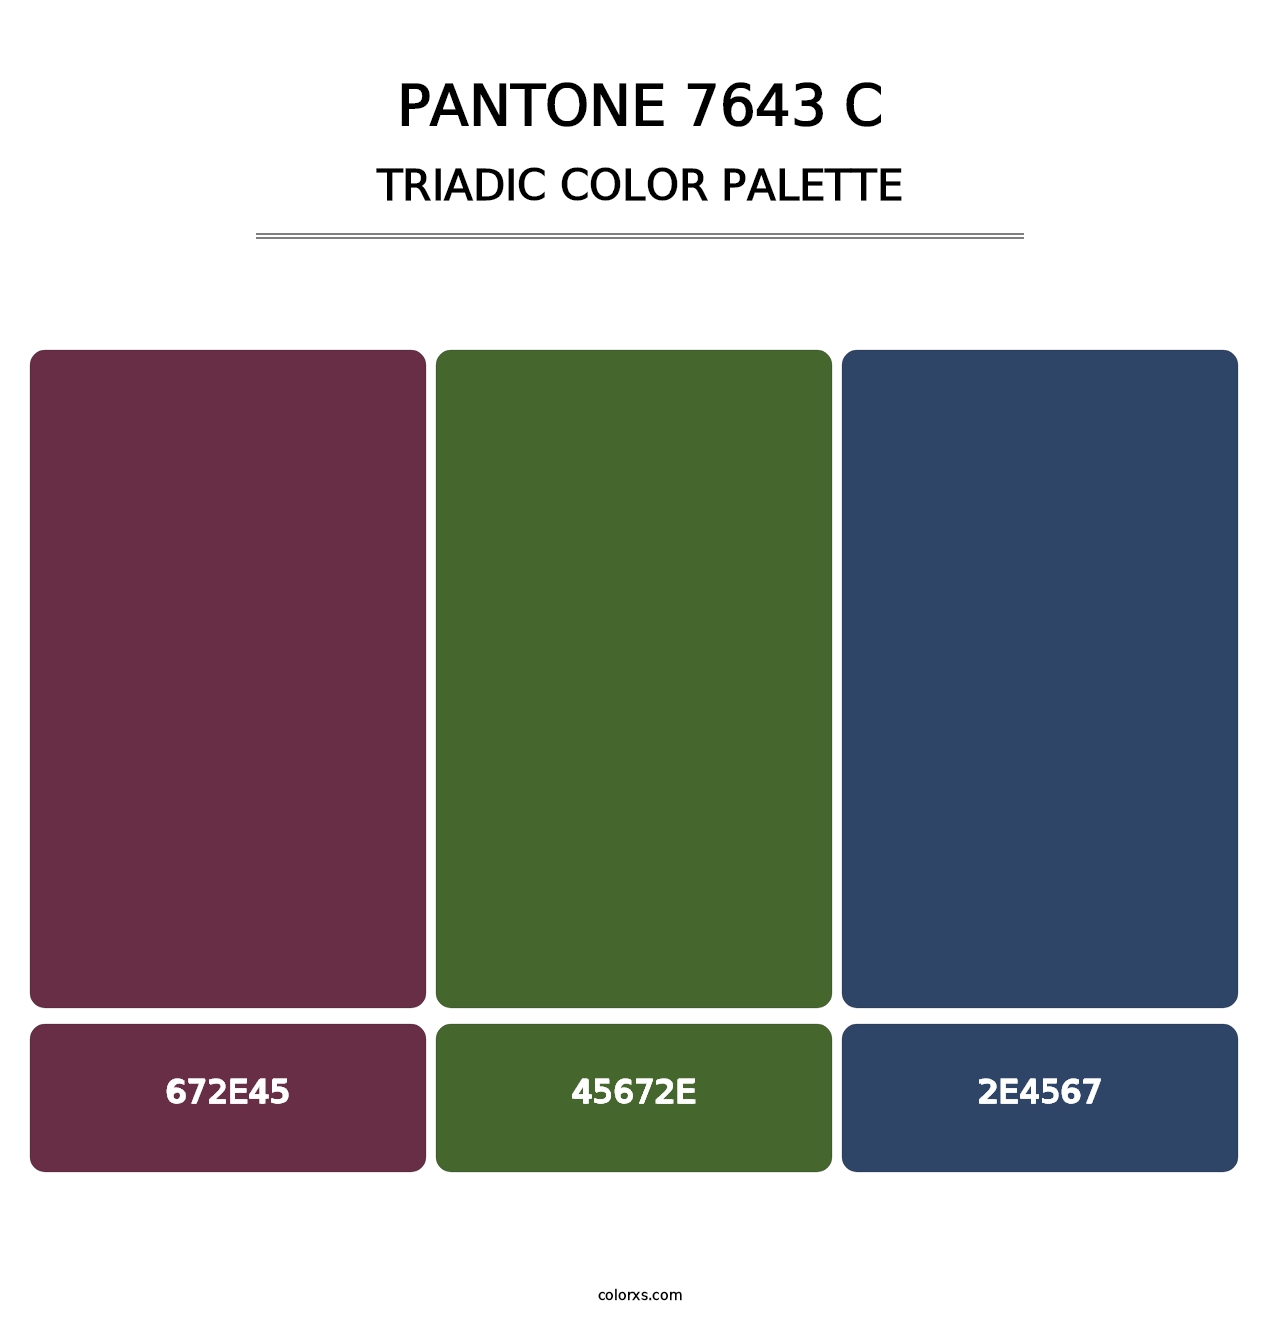 PANTONE 7643 C - Triadic Color Palette